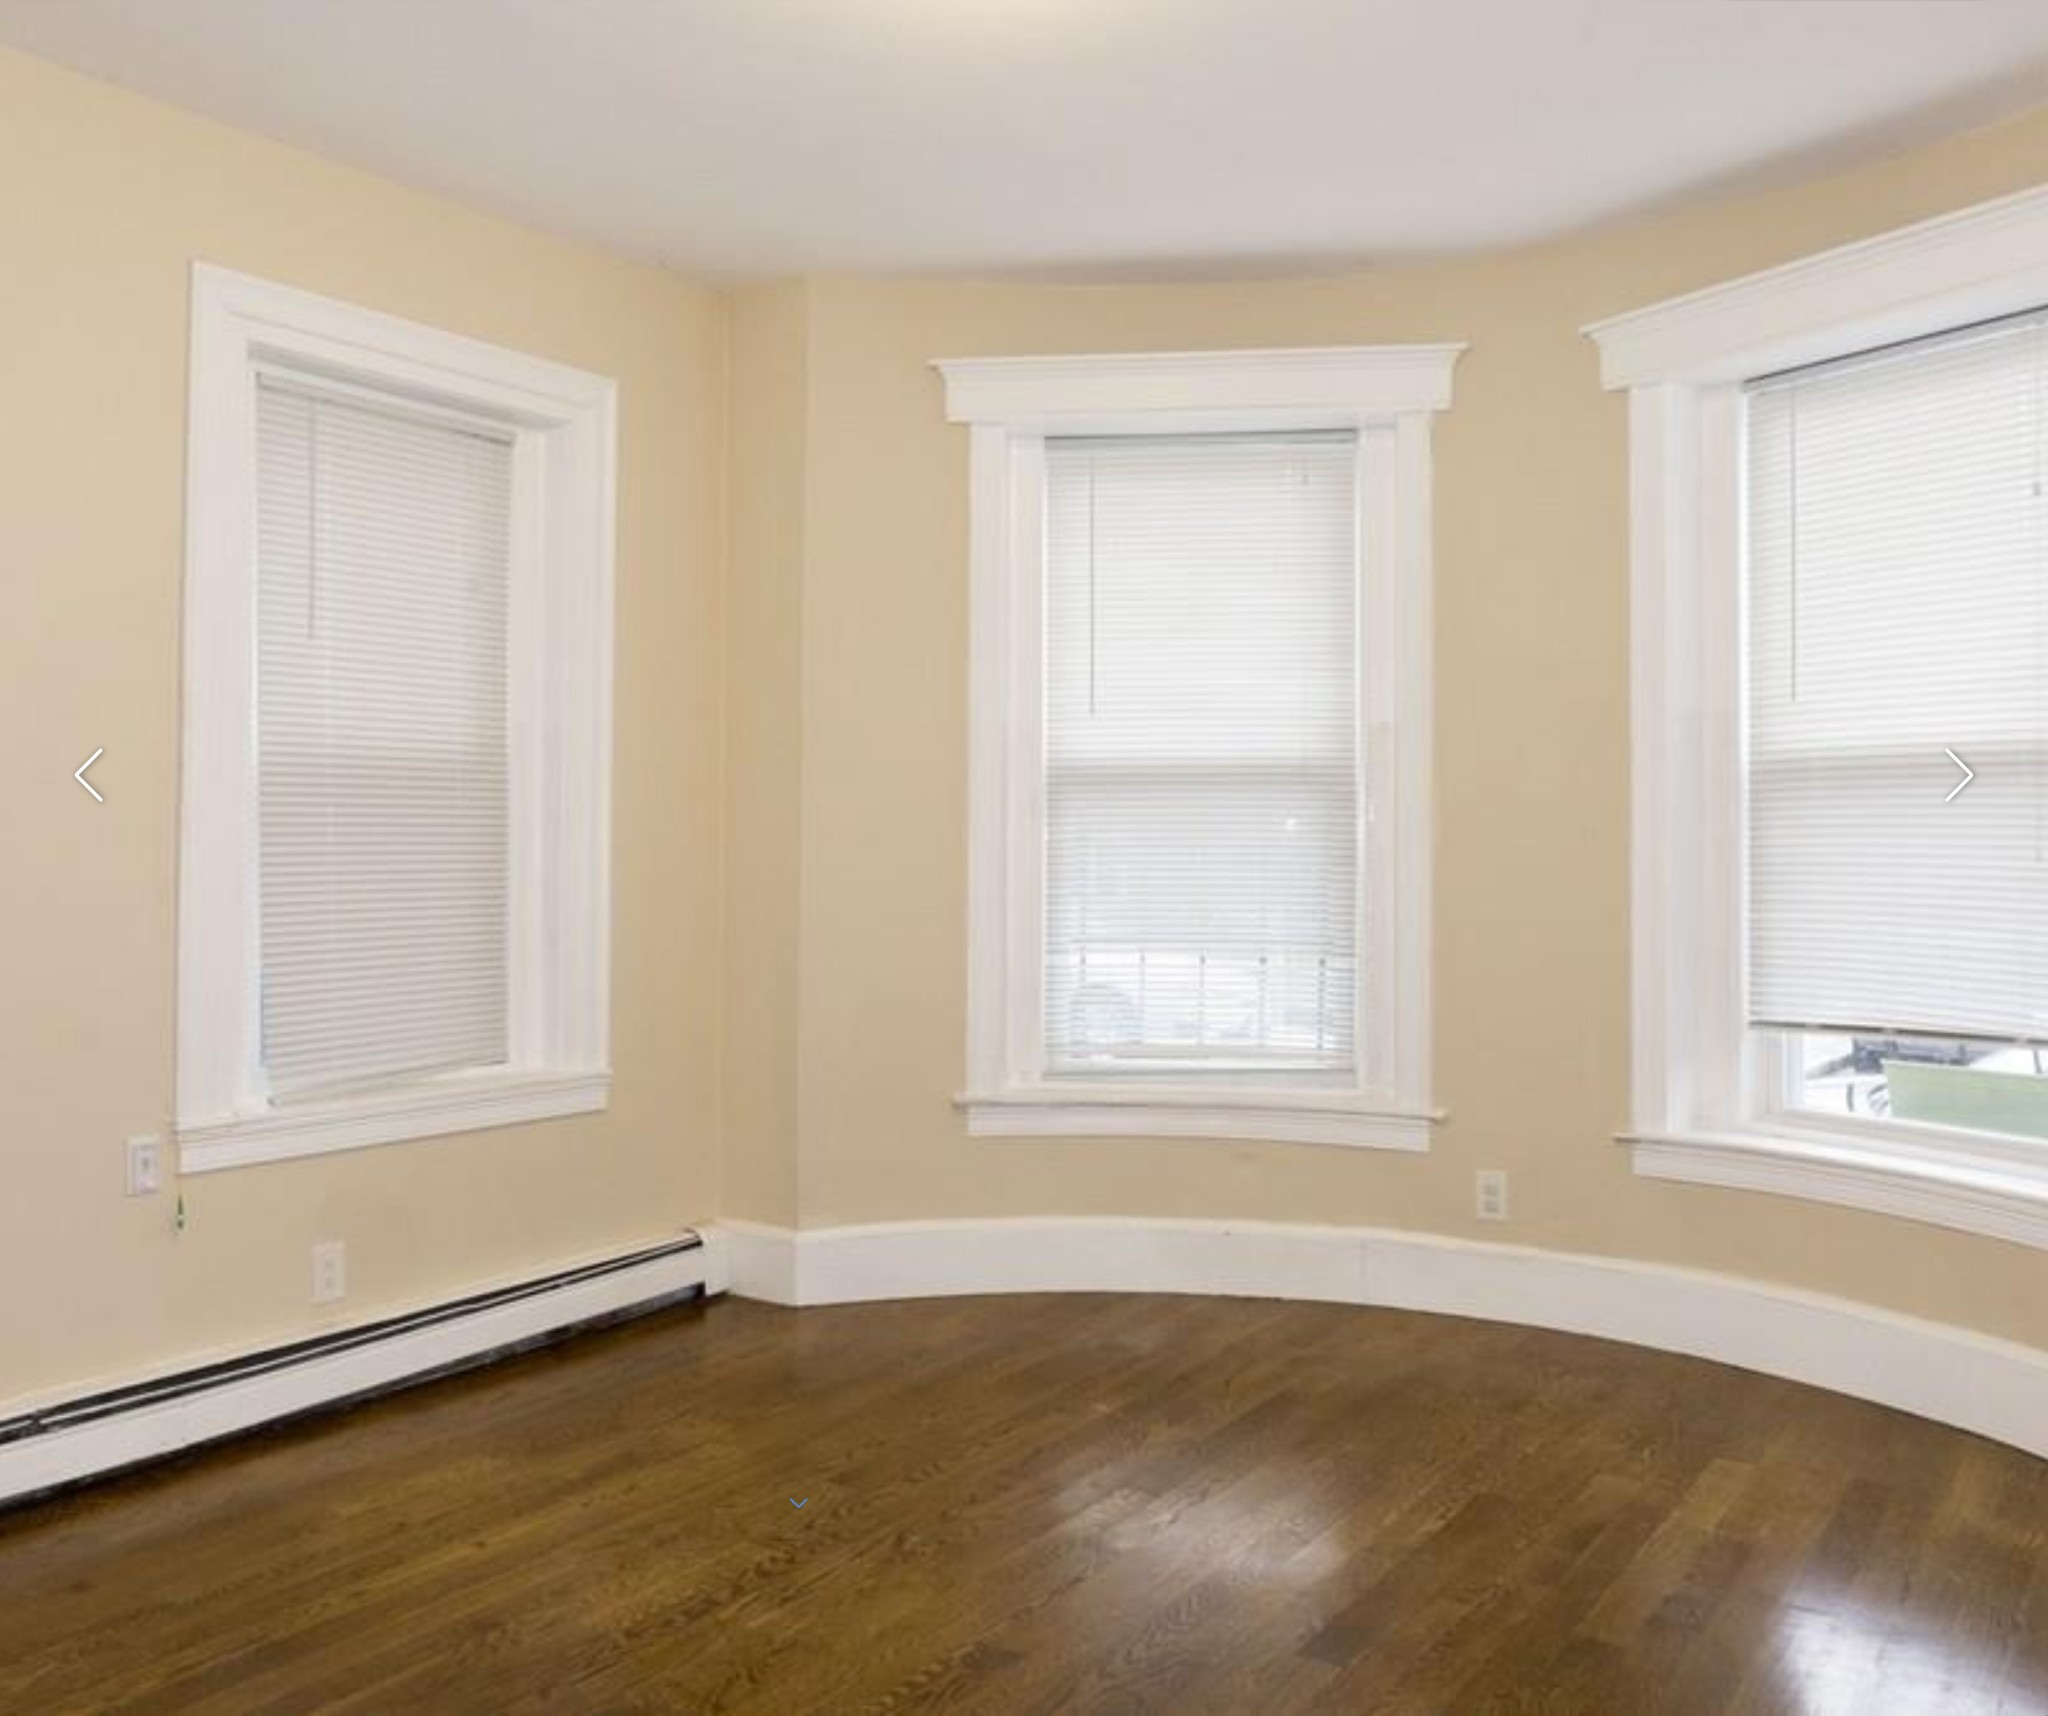 Photos of apartment on Shawmut Ave.,Boston MA 02119